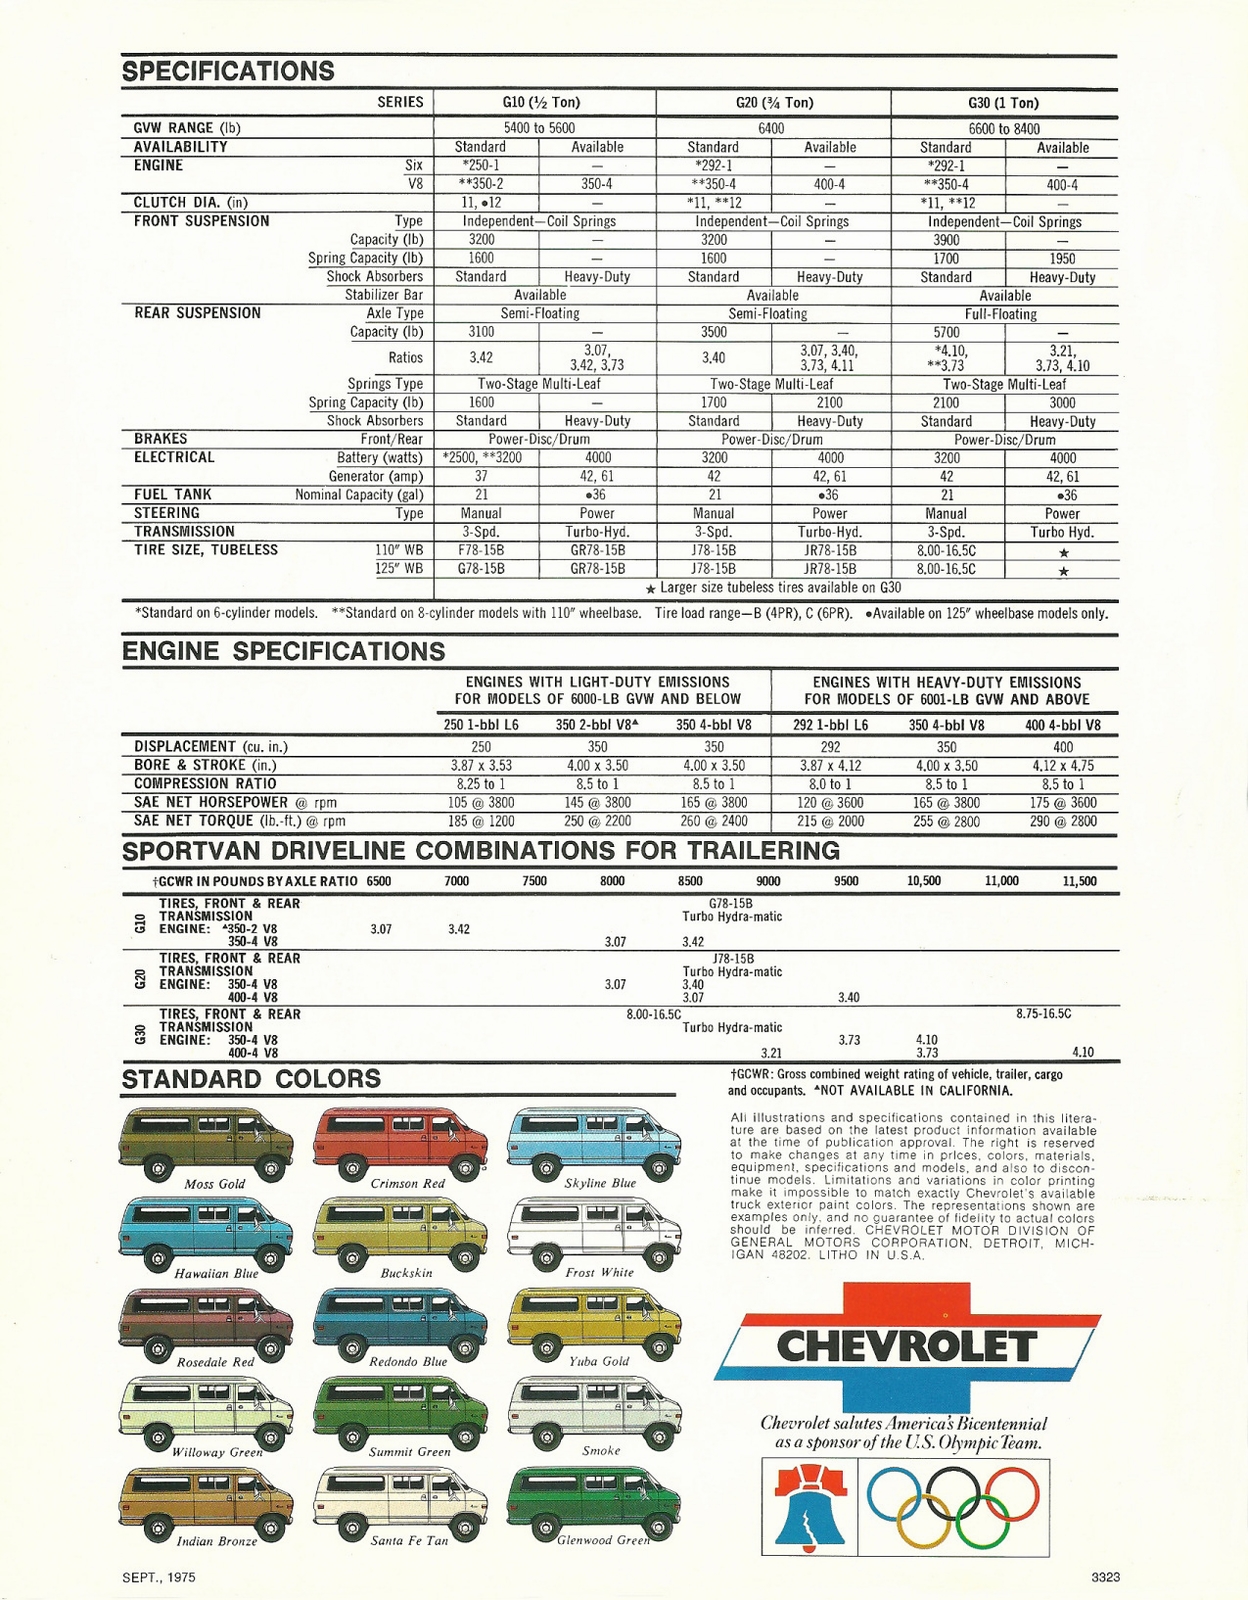 n_1976 Chevrolet Sportvan-04.jpg